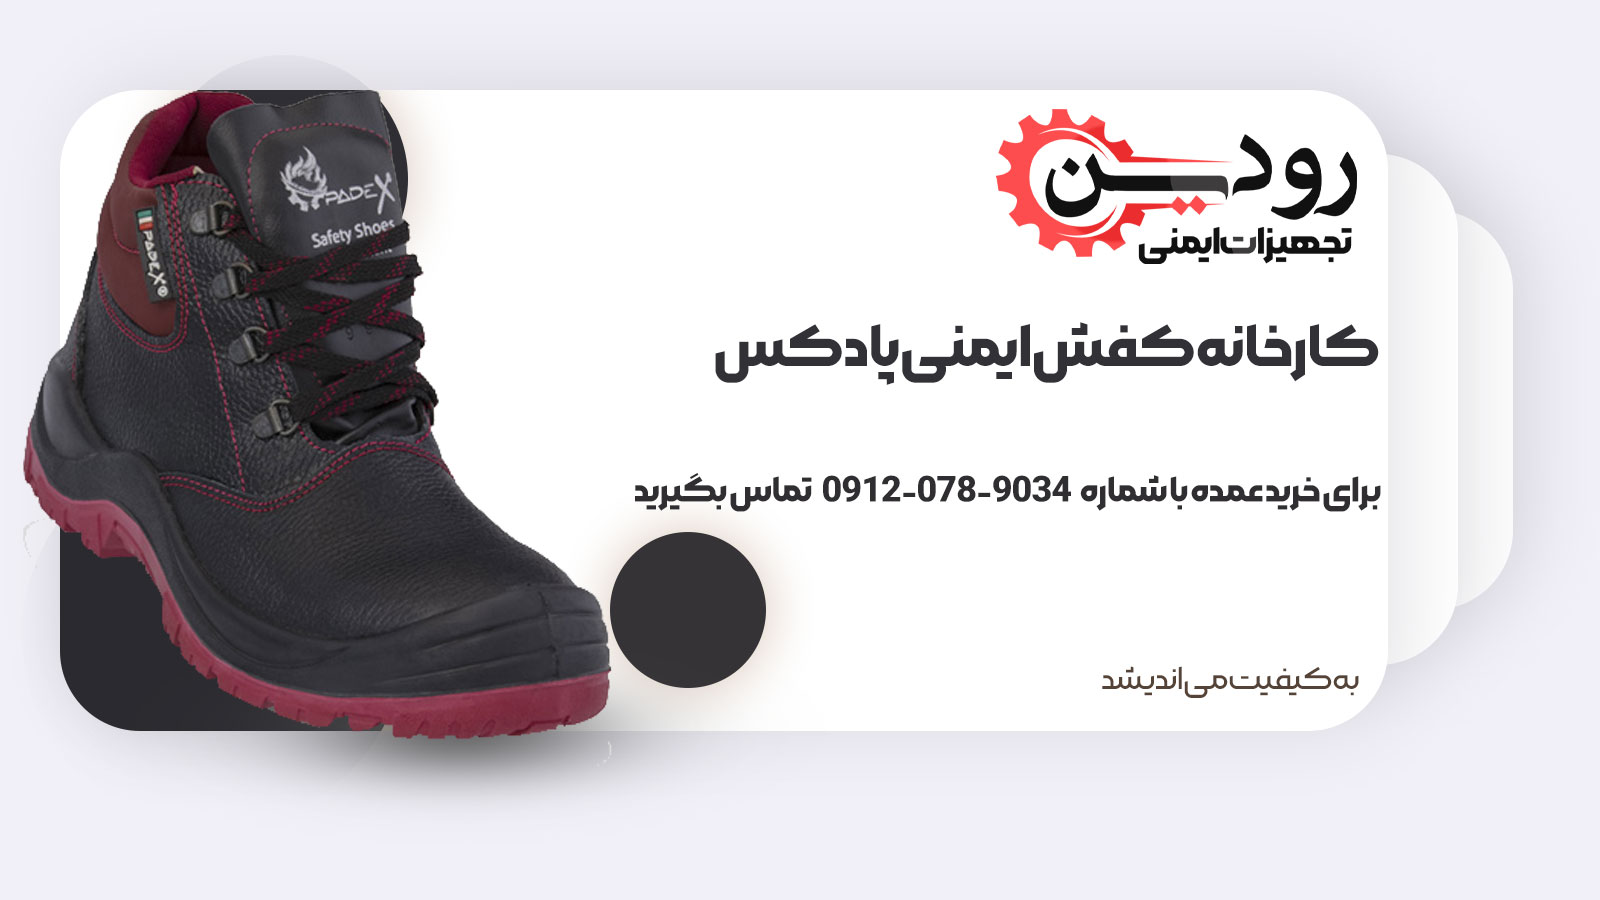 سایت کارخانه کفش ایمنی پادکس راه اندازی شده و اماده ثبت سفارشات است.